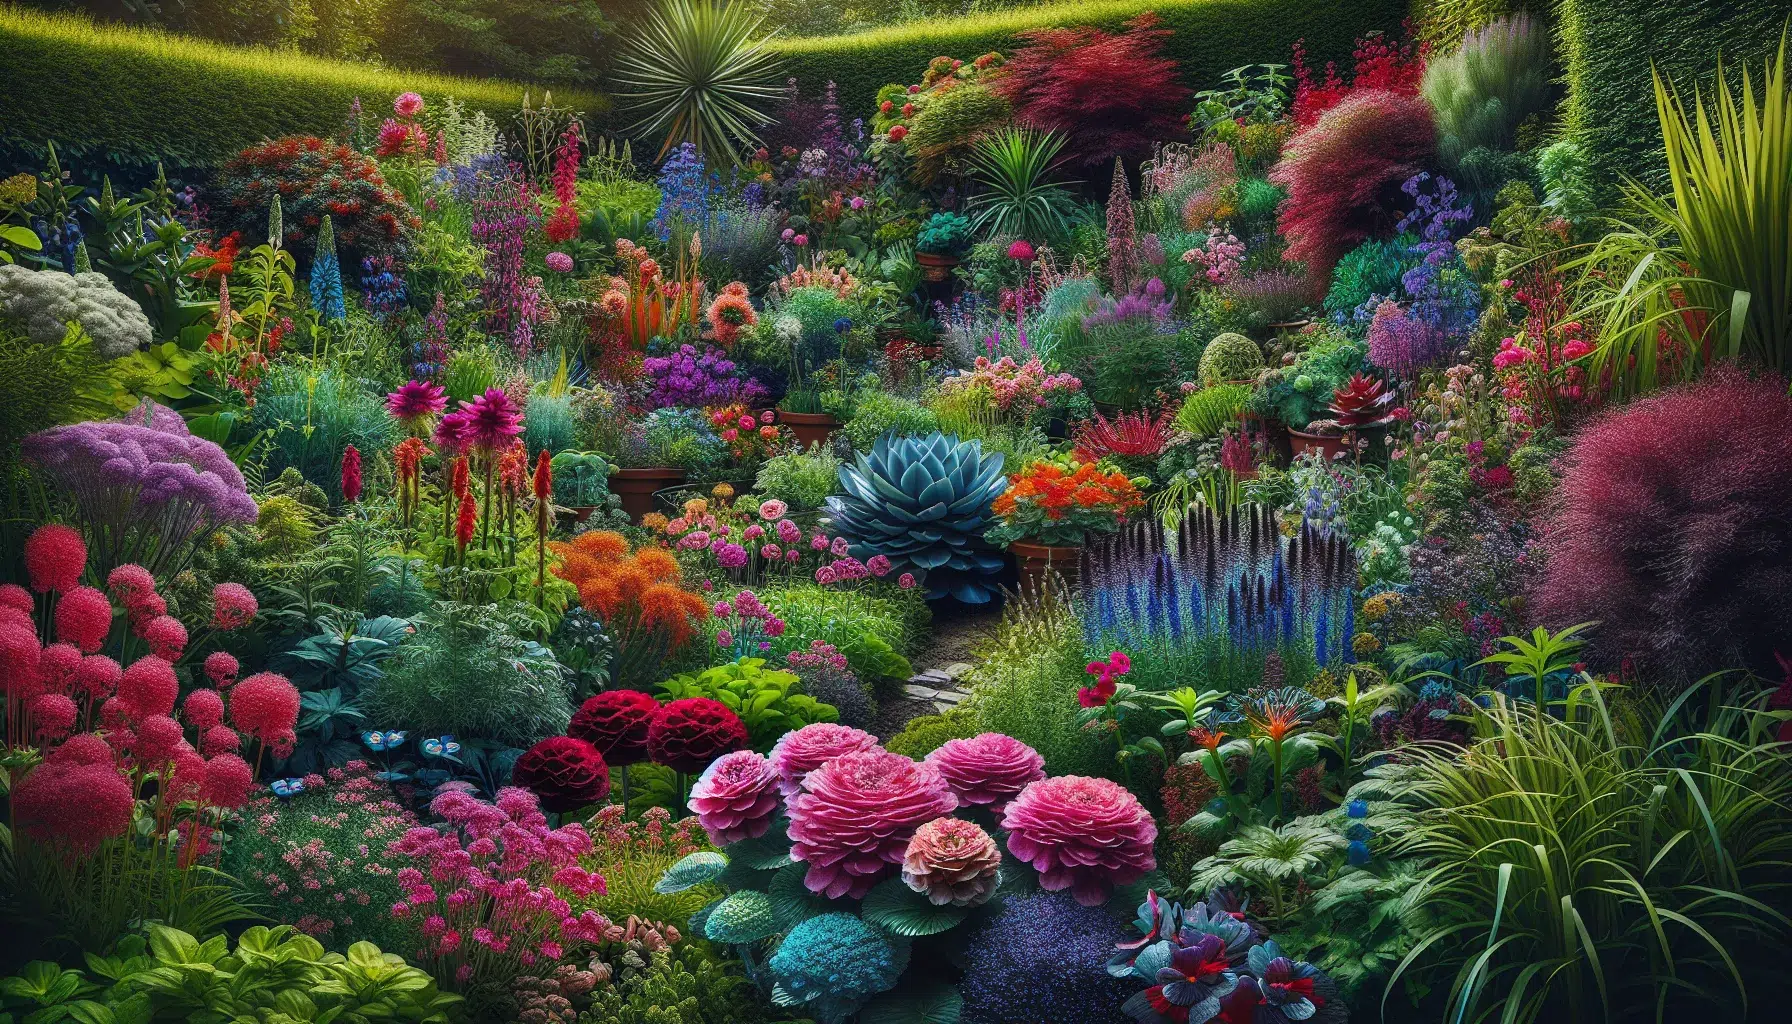 Imagen de un jardín colorido y armonioso con una variedad de plantas ornamentales, resaltando la belleza y diversidad de especies para decorar tu espacio exterior.